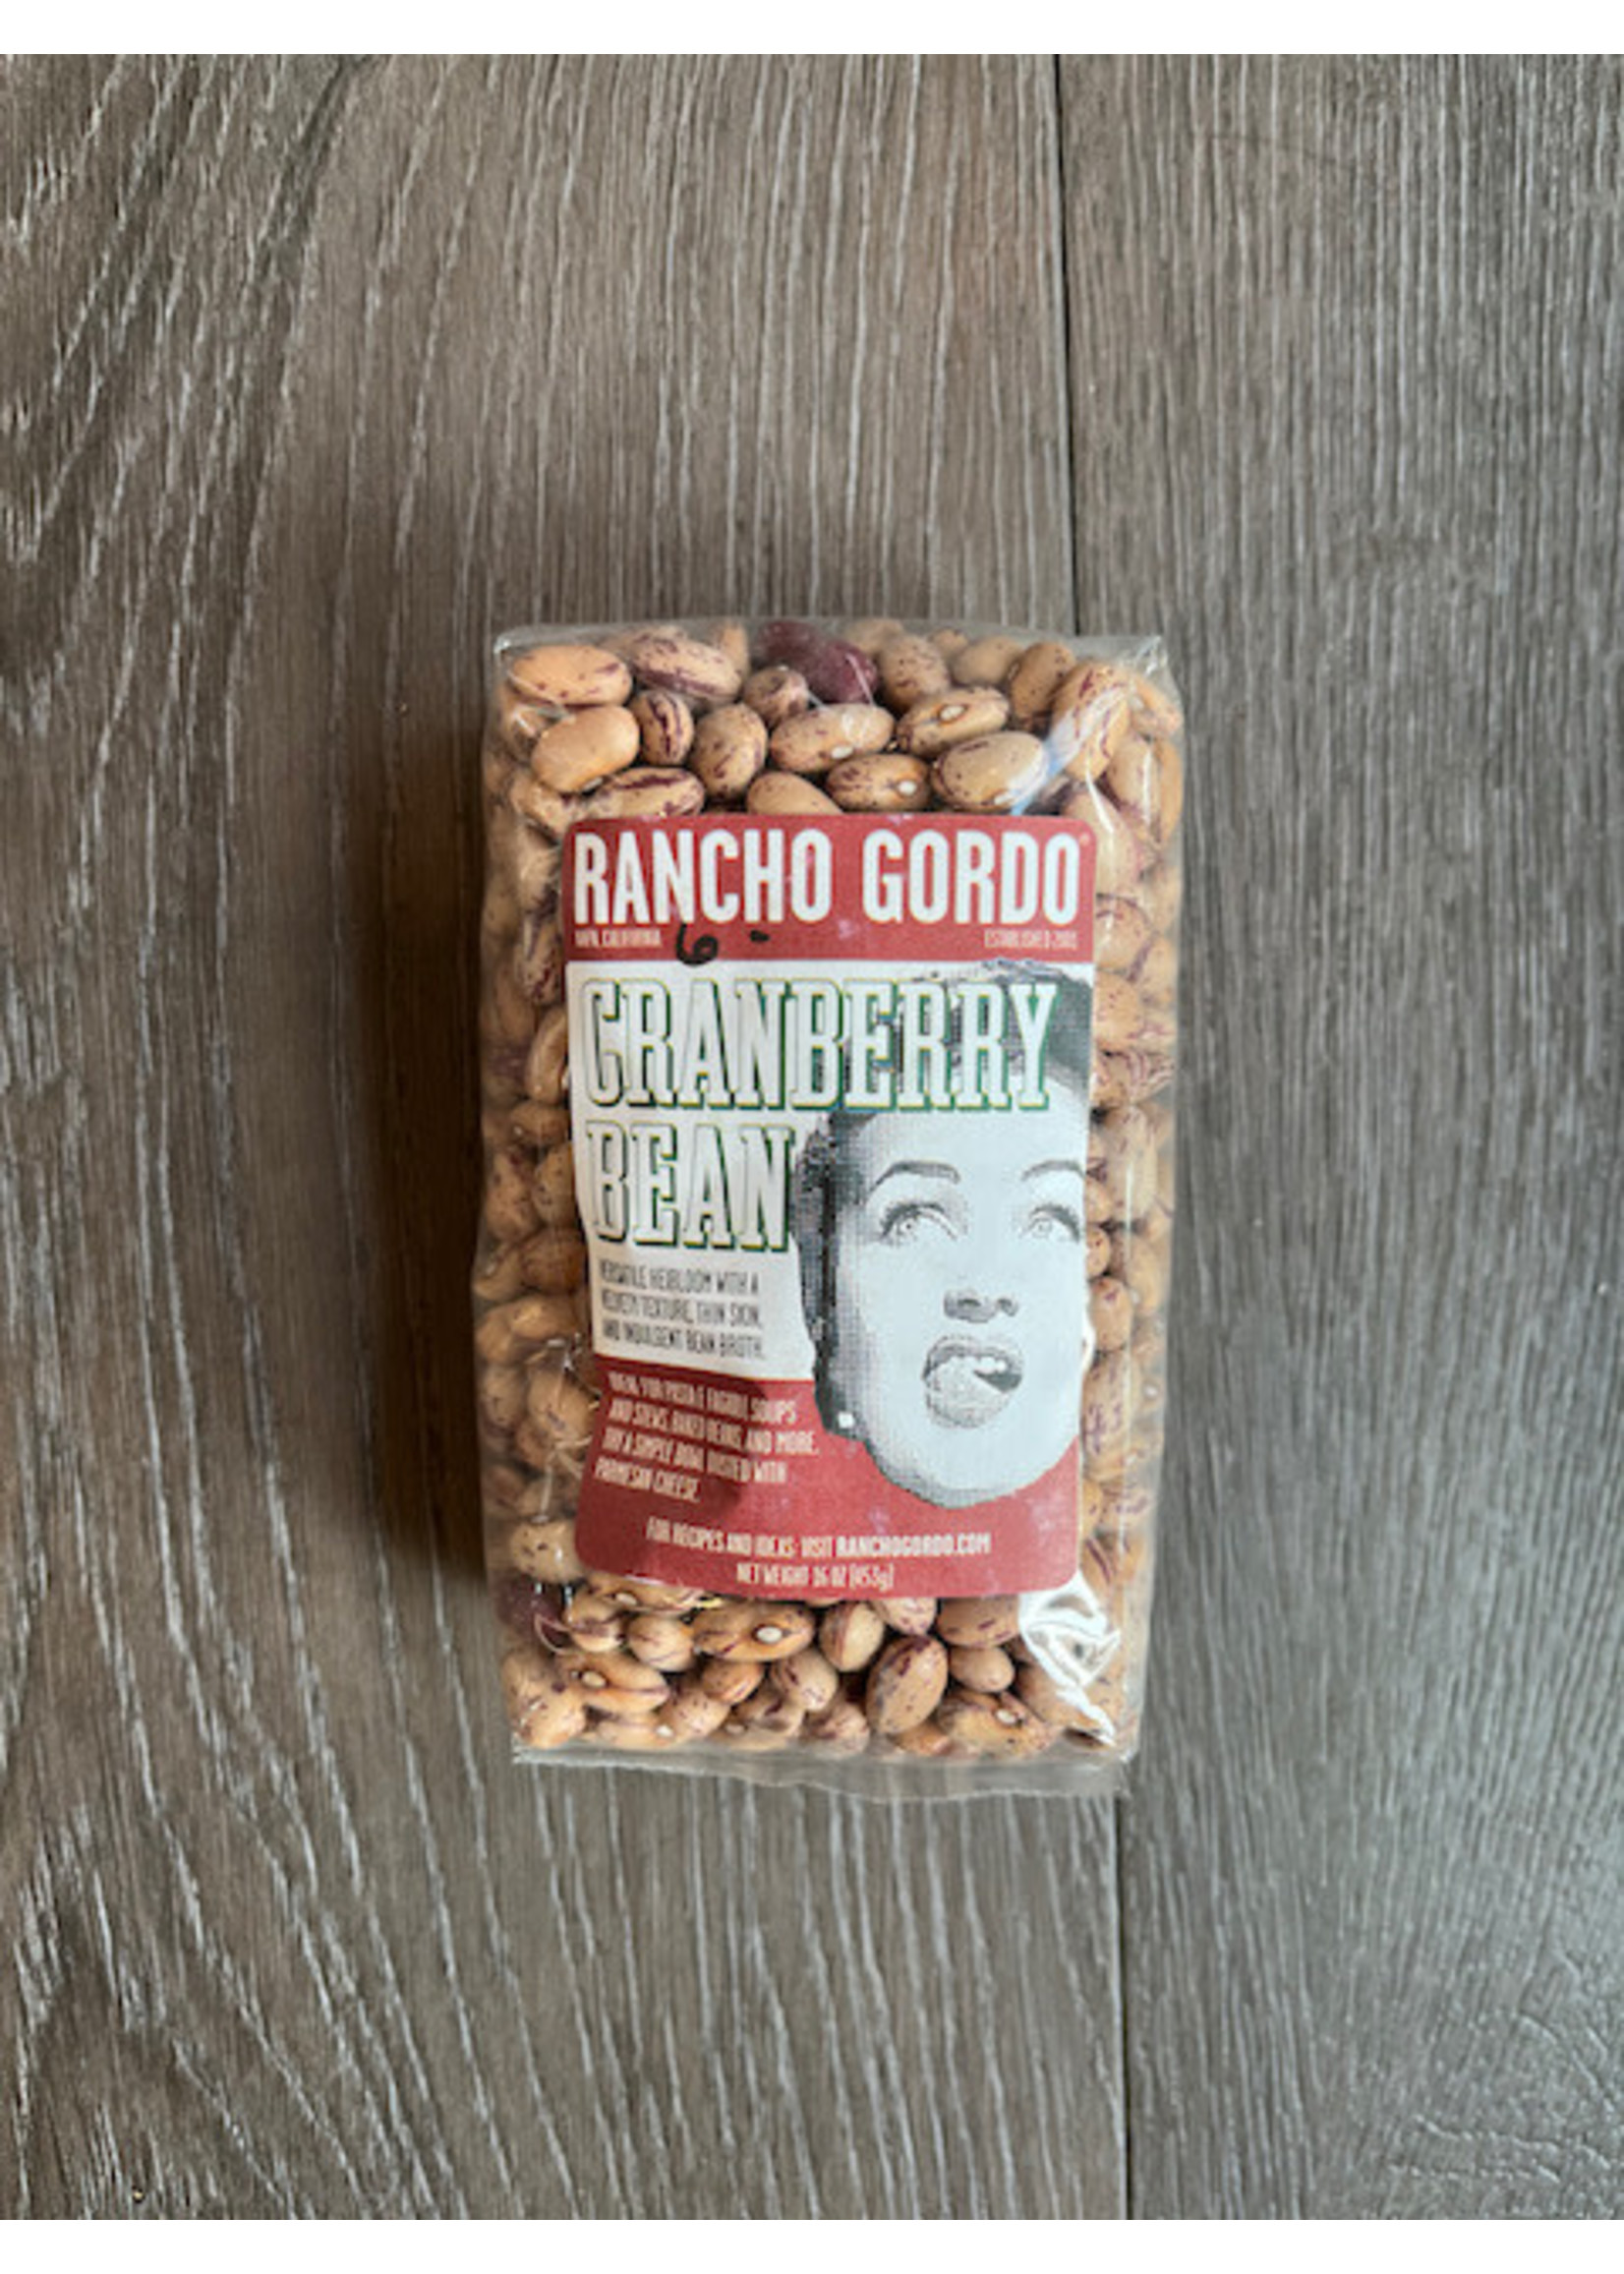 Rancho Gordo Rancho Gordo - Cranberry Bean